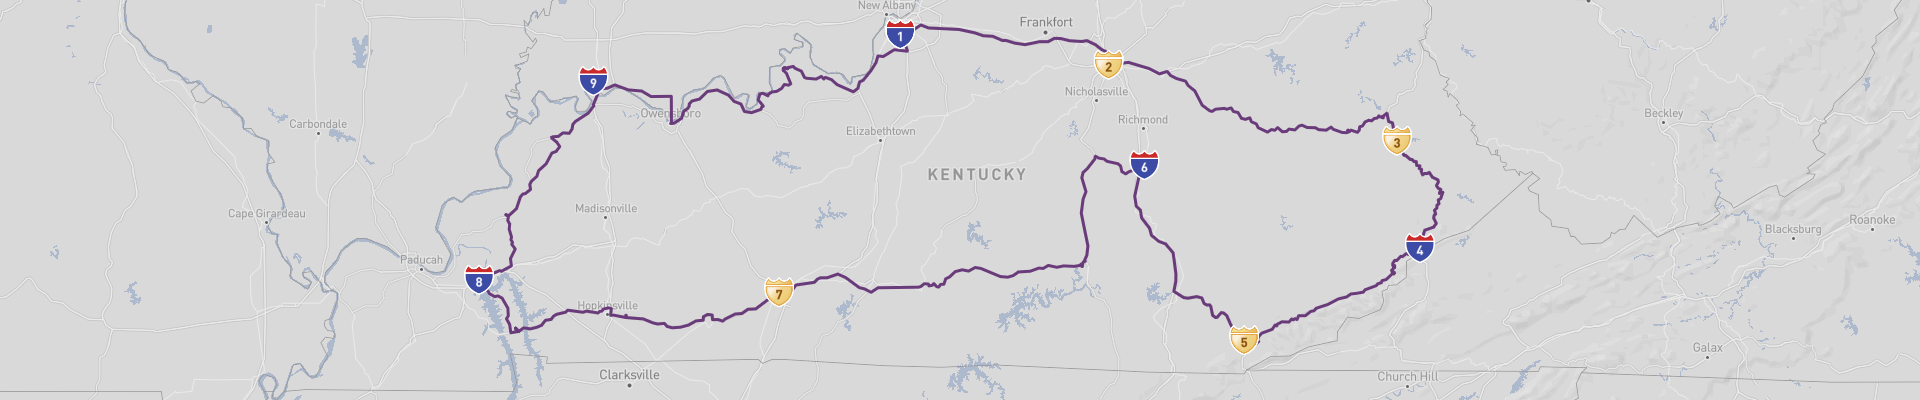 Kentucky Roadtrip